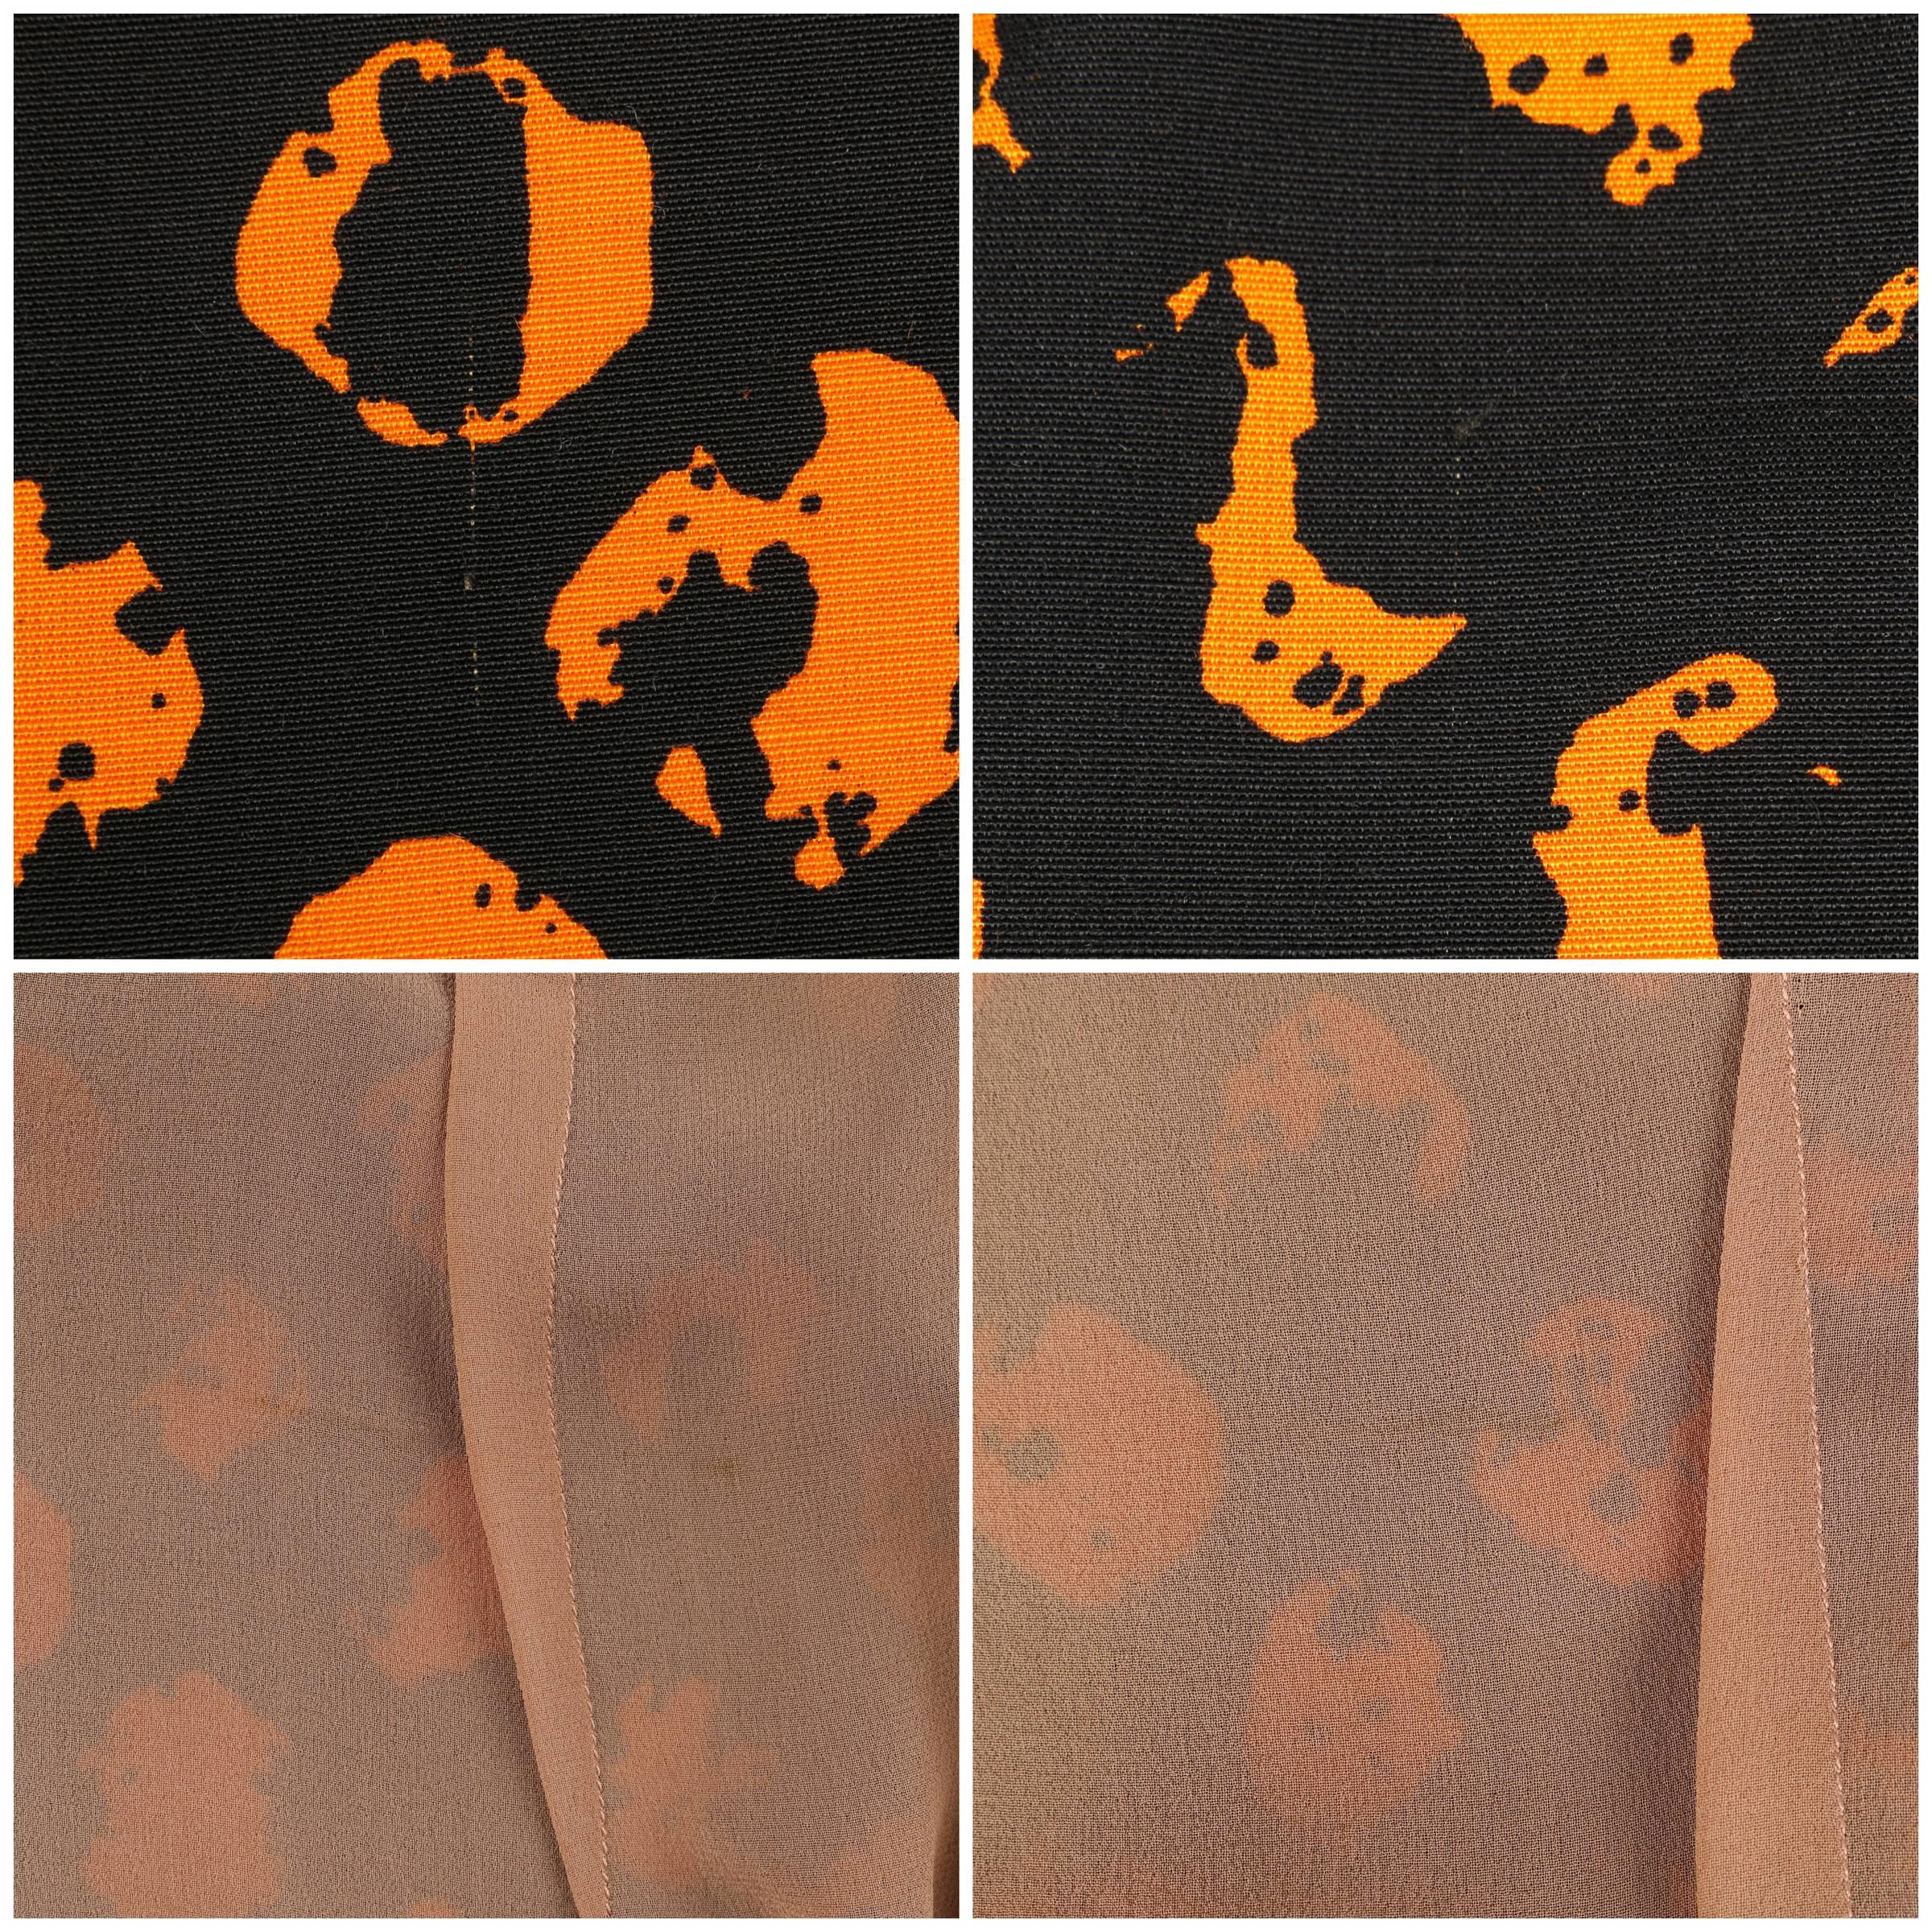 CHRISTIAN DIOR A/W 1972 Marc Bohan 2 Pc Black Orange Polkadot Blouse Skirt Set 5